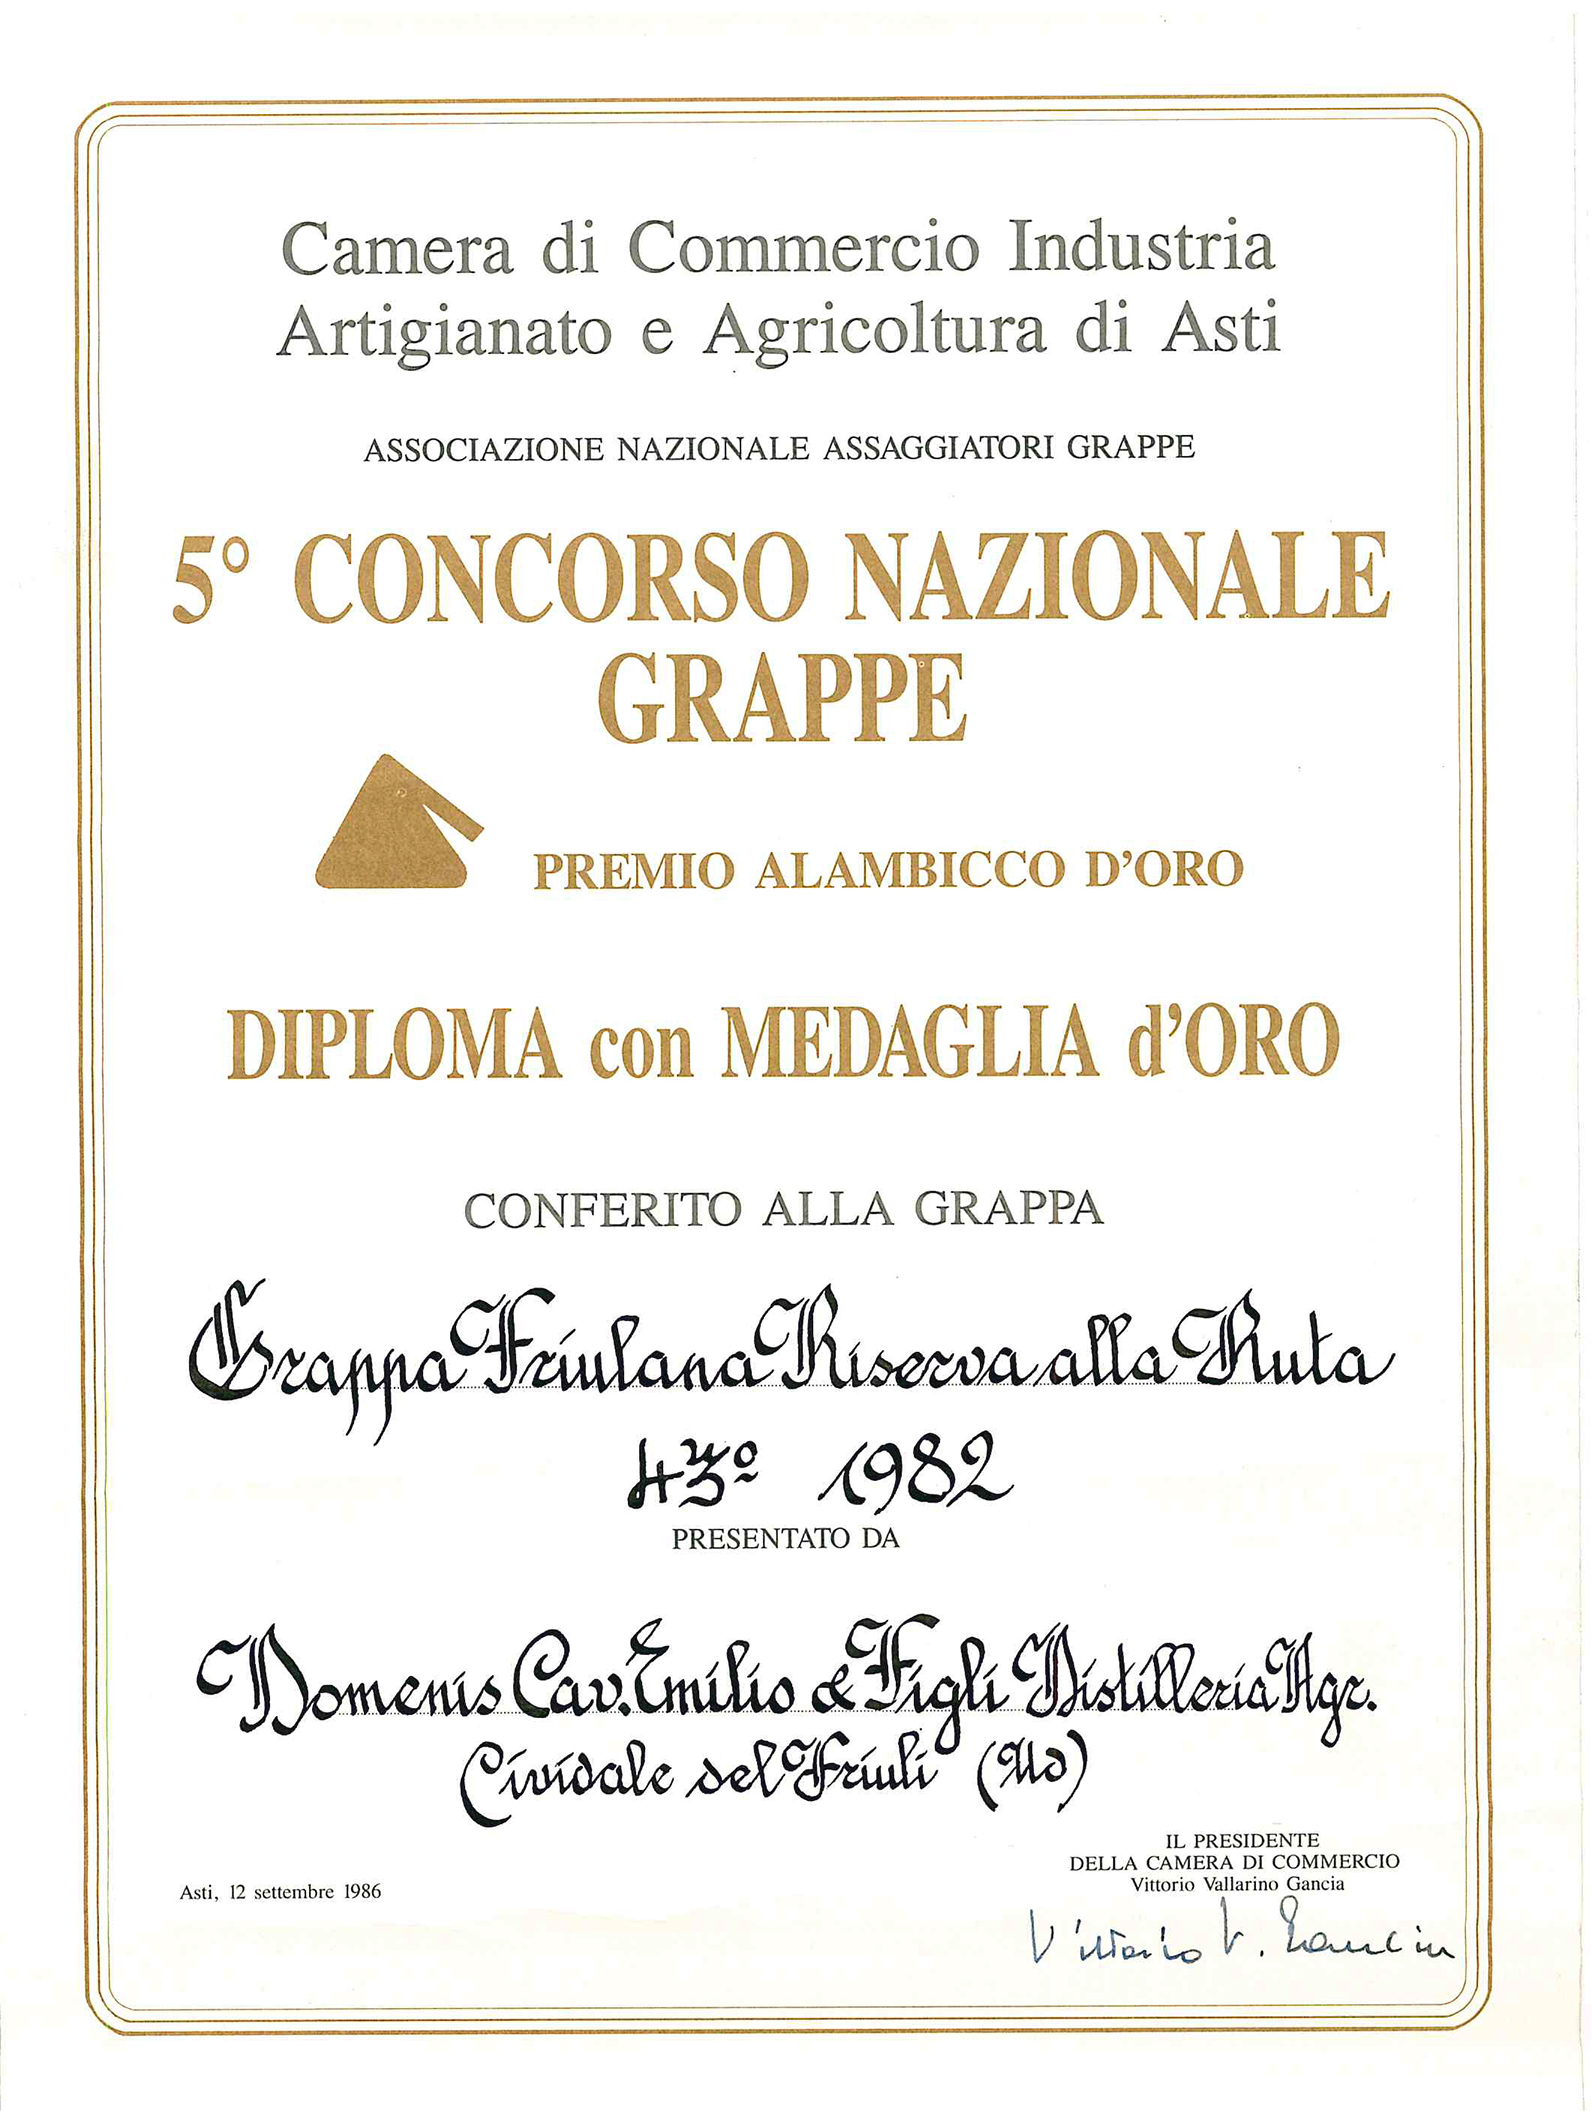 Premio Alambicco d’Oro 1986 – Grappa Friulana Riserva alla Ruta 43° 1982